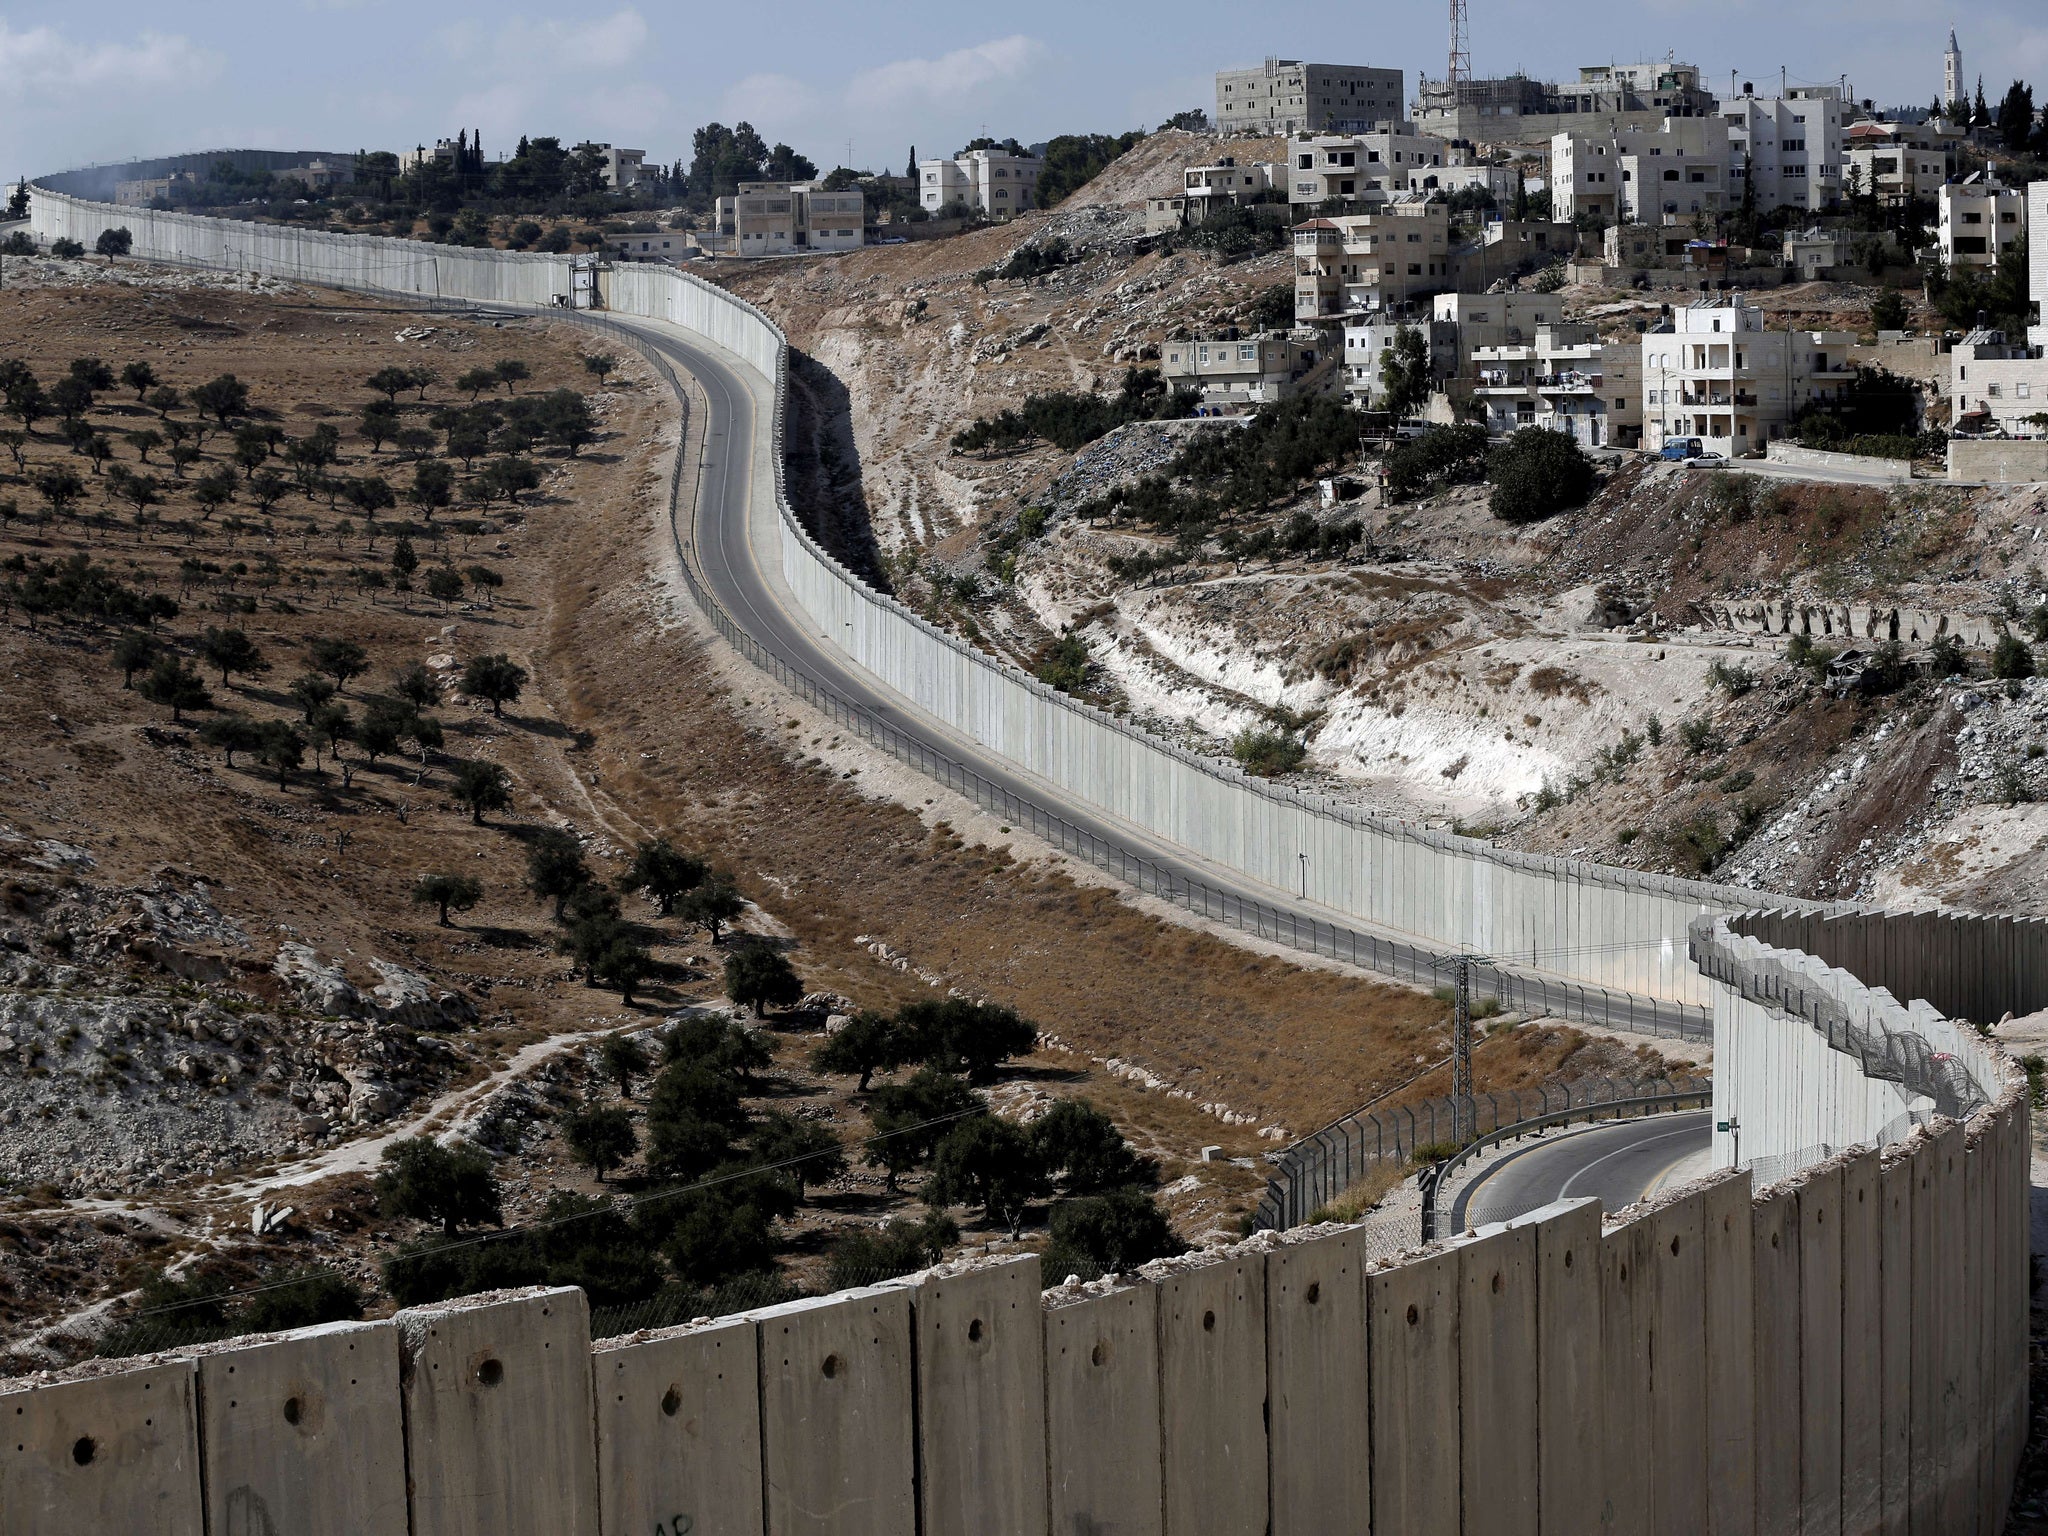 стена израиля с палестиной